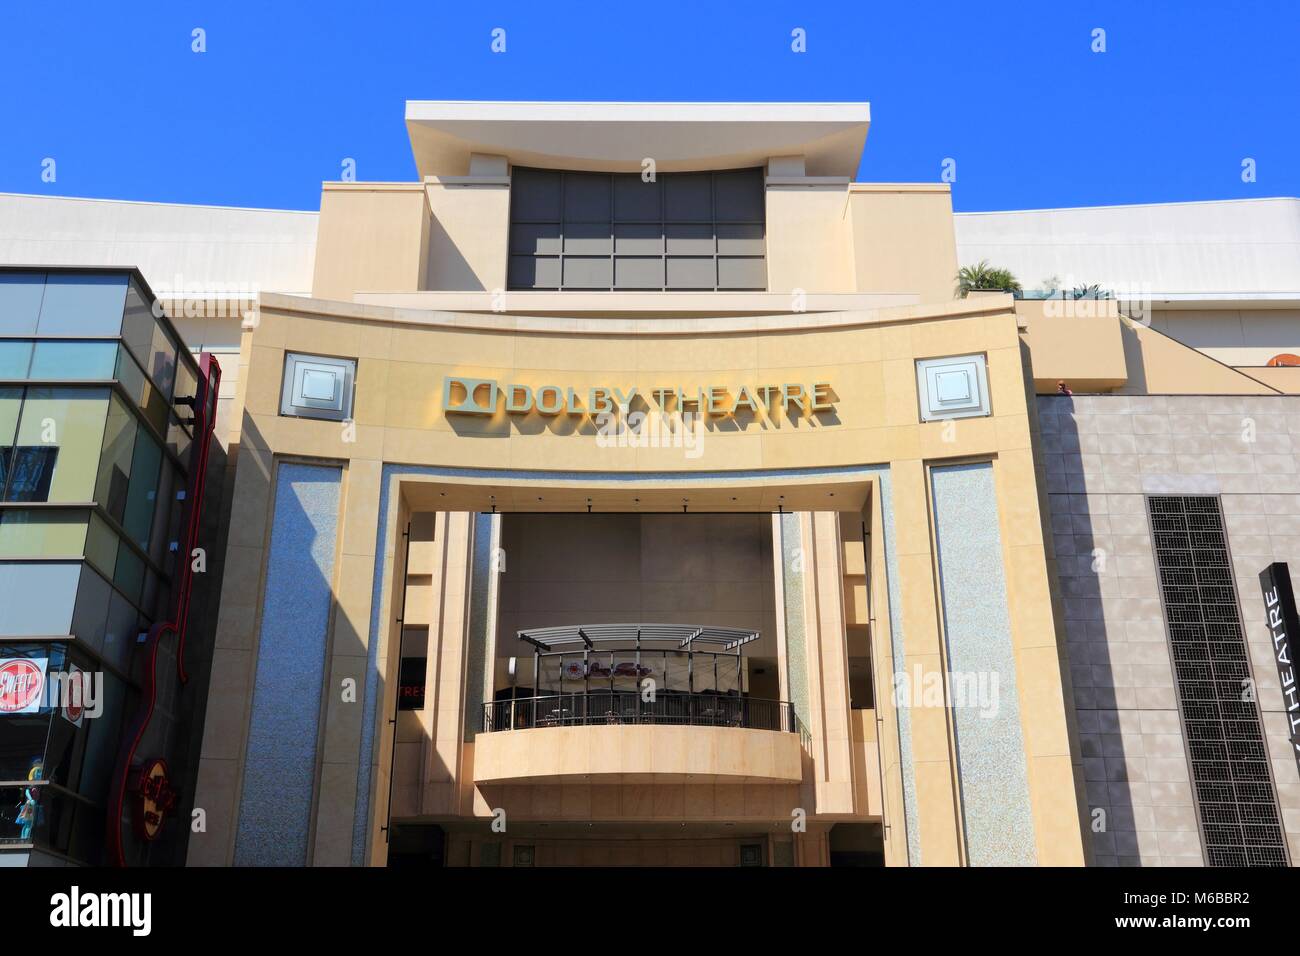 LOS ANGELES, USA - April 5, 2014: Dolby Theatre in Hollywood. Ehemals Kodak Theater bekannt, es ist die Heimat der Academy Awards Zeremonien. Stockfoto